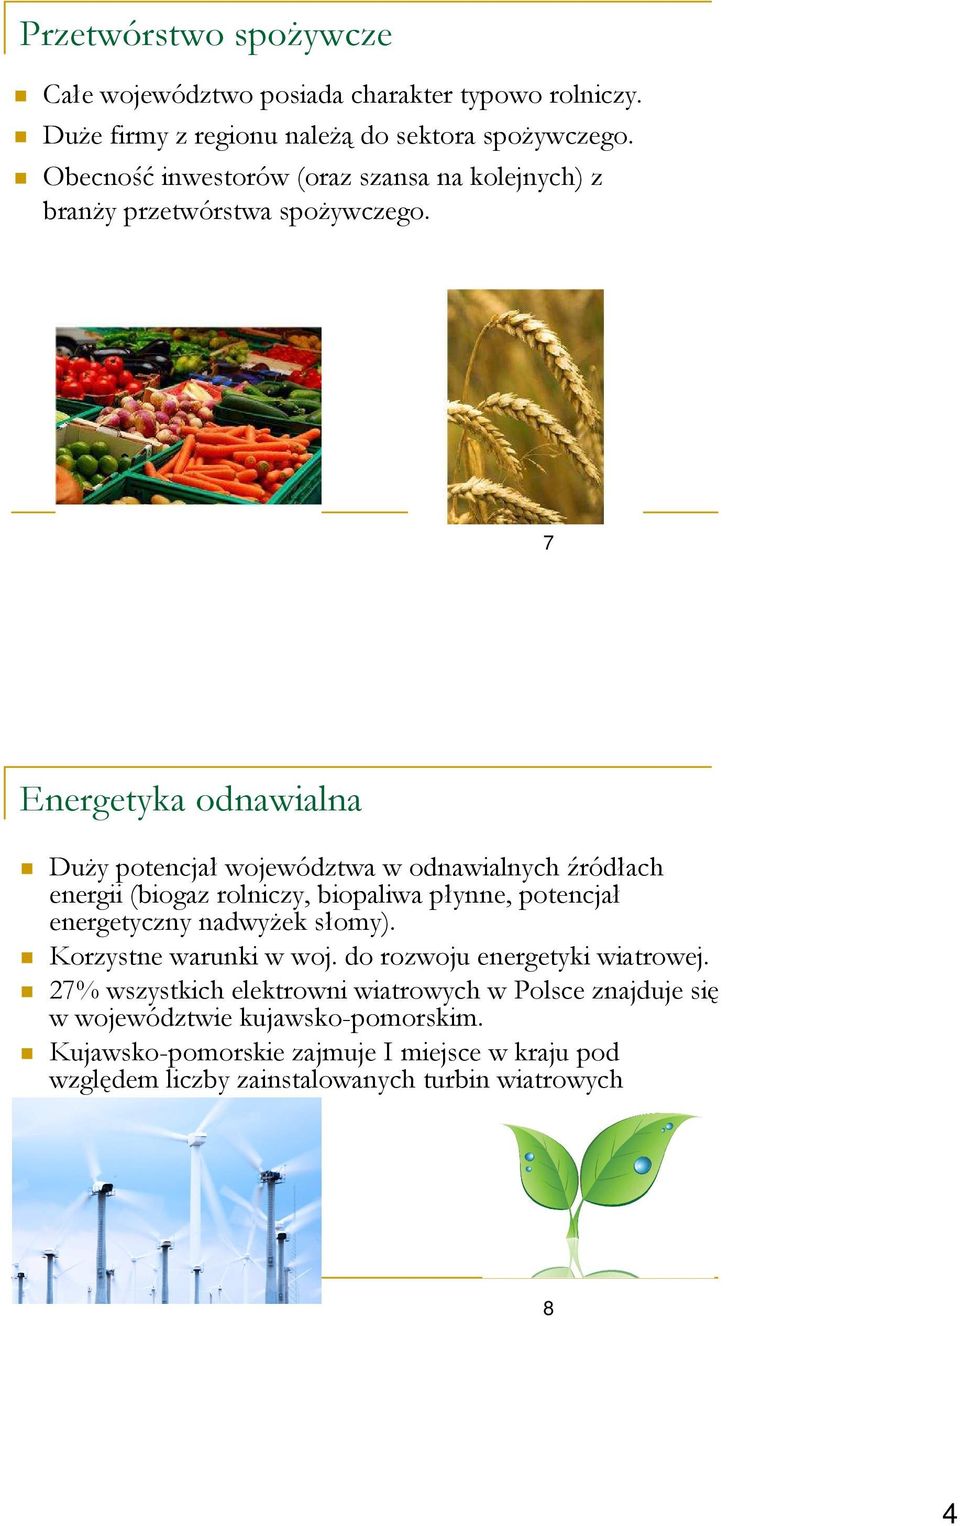 7 Energetyka odnawialna Duży potencjałwojewództwa w odnawialnych źródłach energii (biogaz rolniczy, biopaliwa płynne, potencjał energetyczny nadwyżek